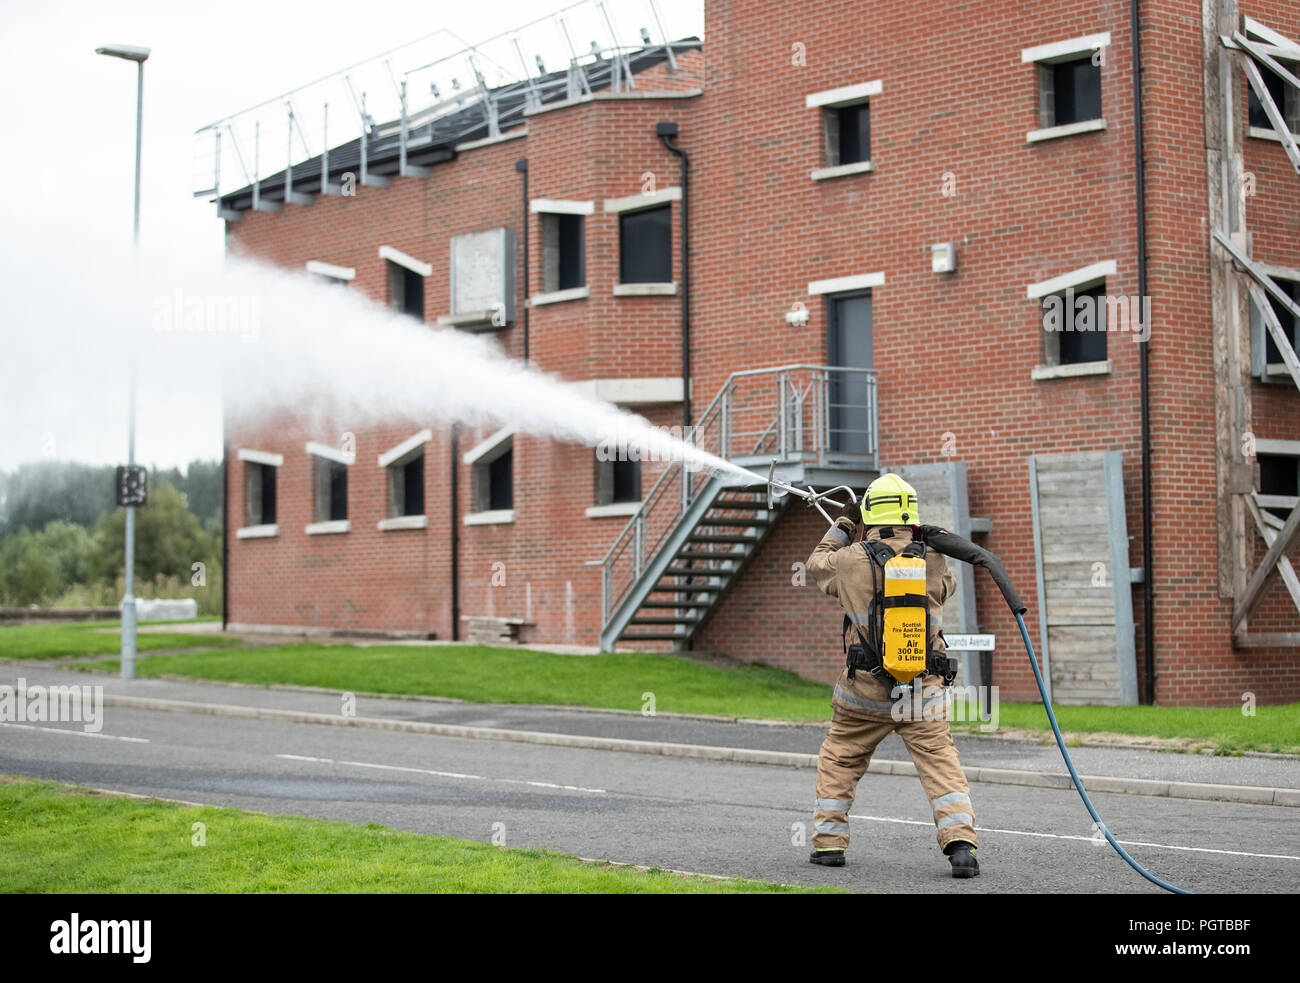 Feuerwehrleute des Scottish Fire and Rescue Service in ihrem National Training Center in Glasgow demonstrieren Ultrahochdrucklanzen, die unter dem Namen "Coldcut Cobra" firmiert und es Feuerwehrleuten ermöglichen, ein Feuerschutzmittel durch die Wand eines brennenden Gebäudes zu sprengen. Stockfoto